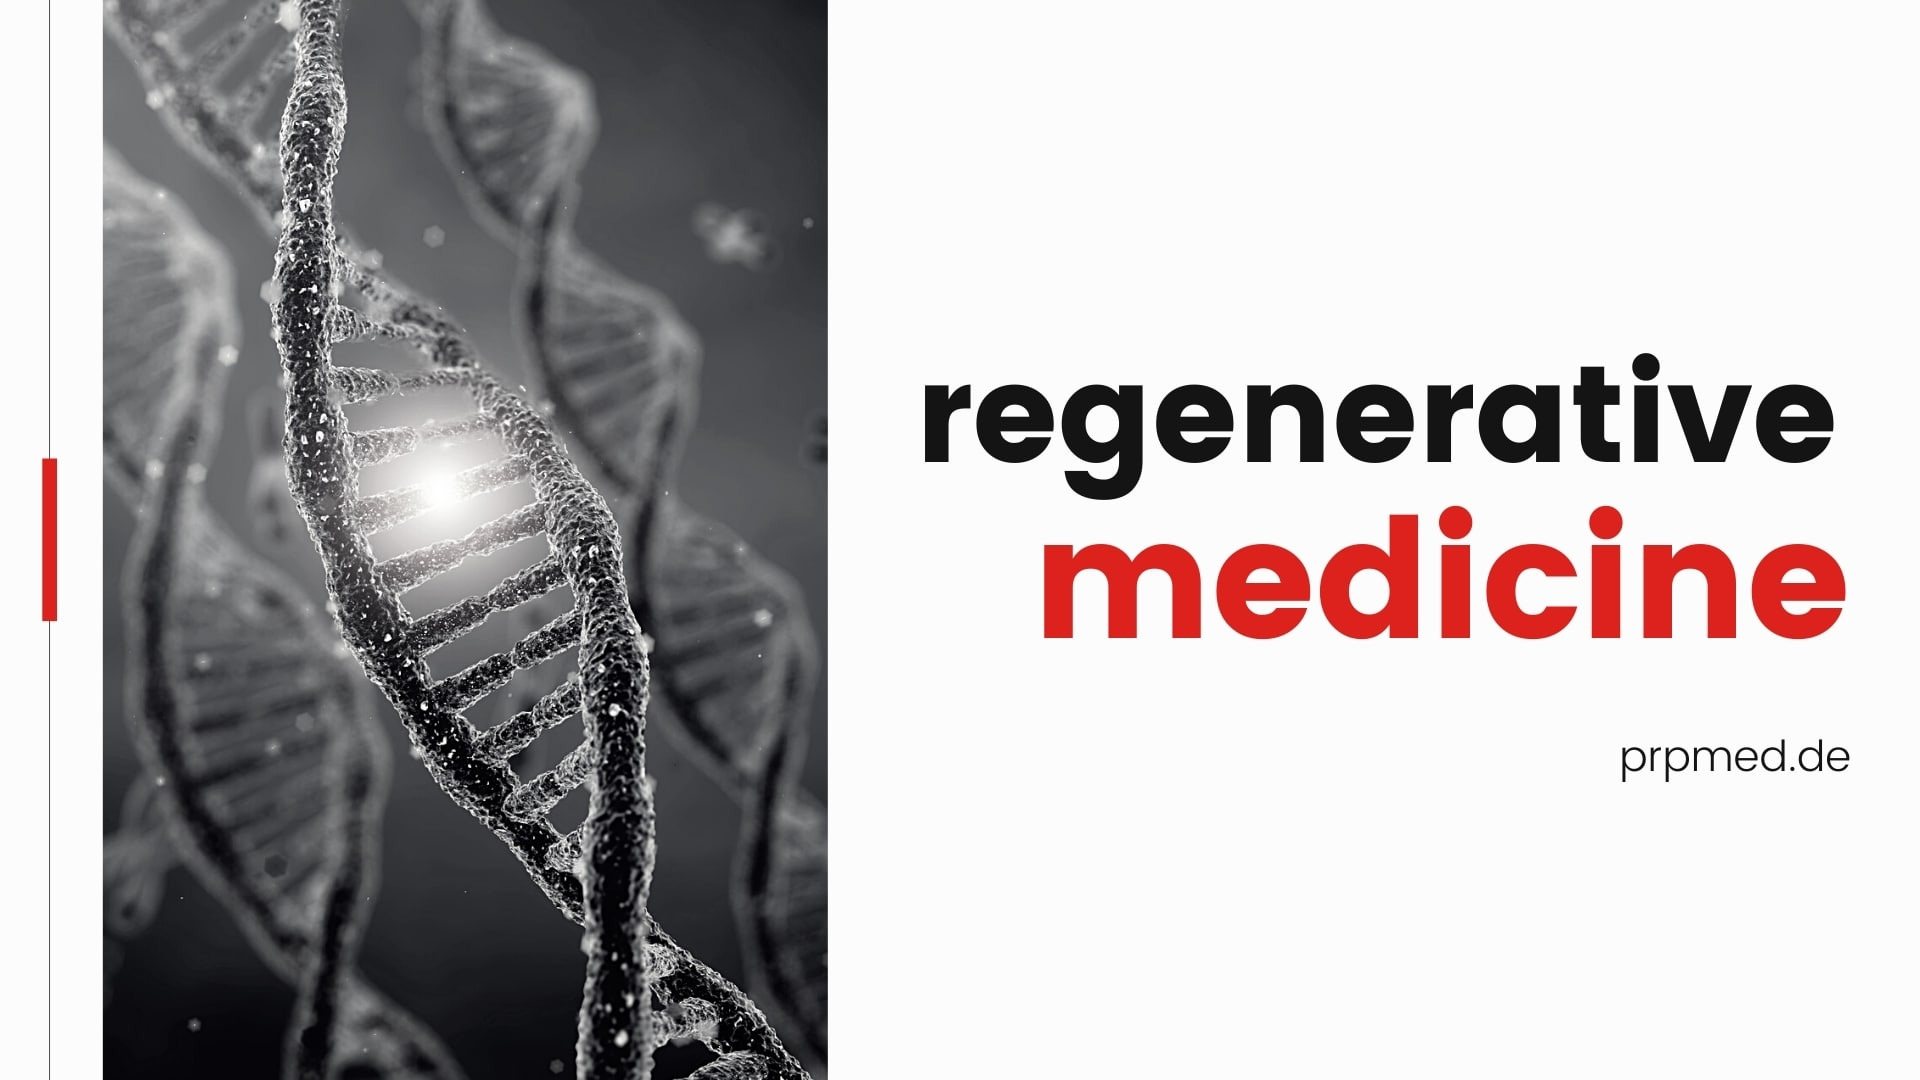 Какво представлява регенеративната медицина?